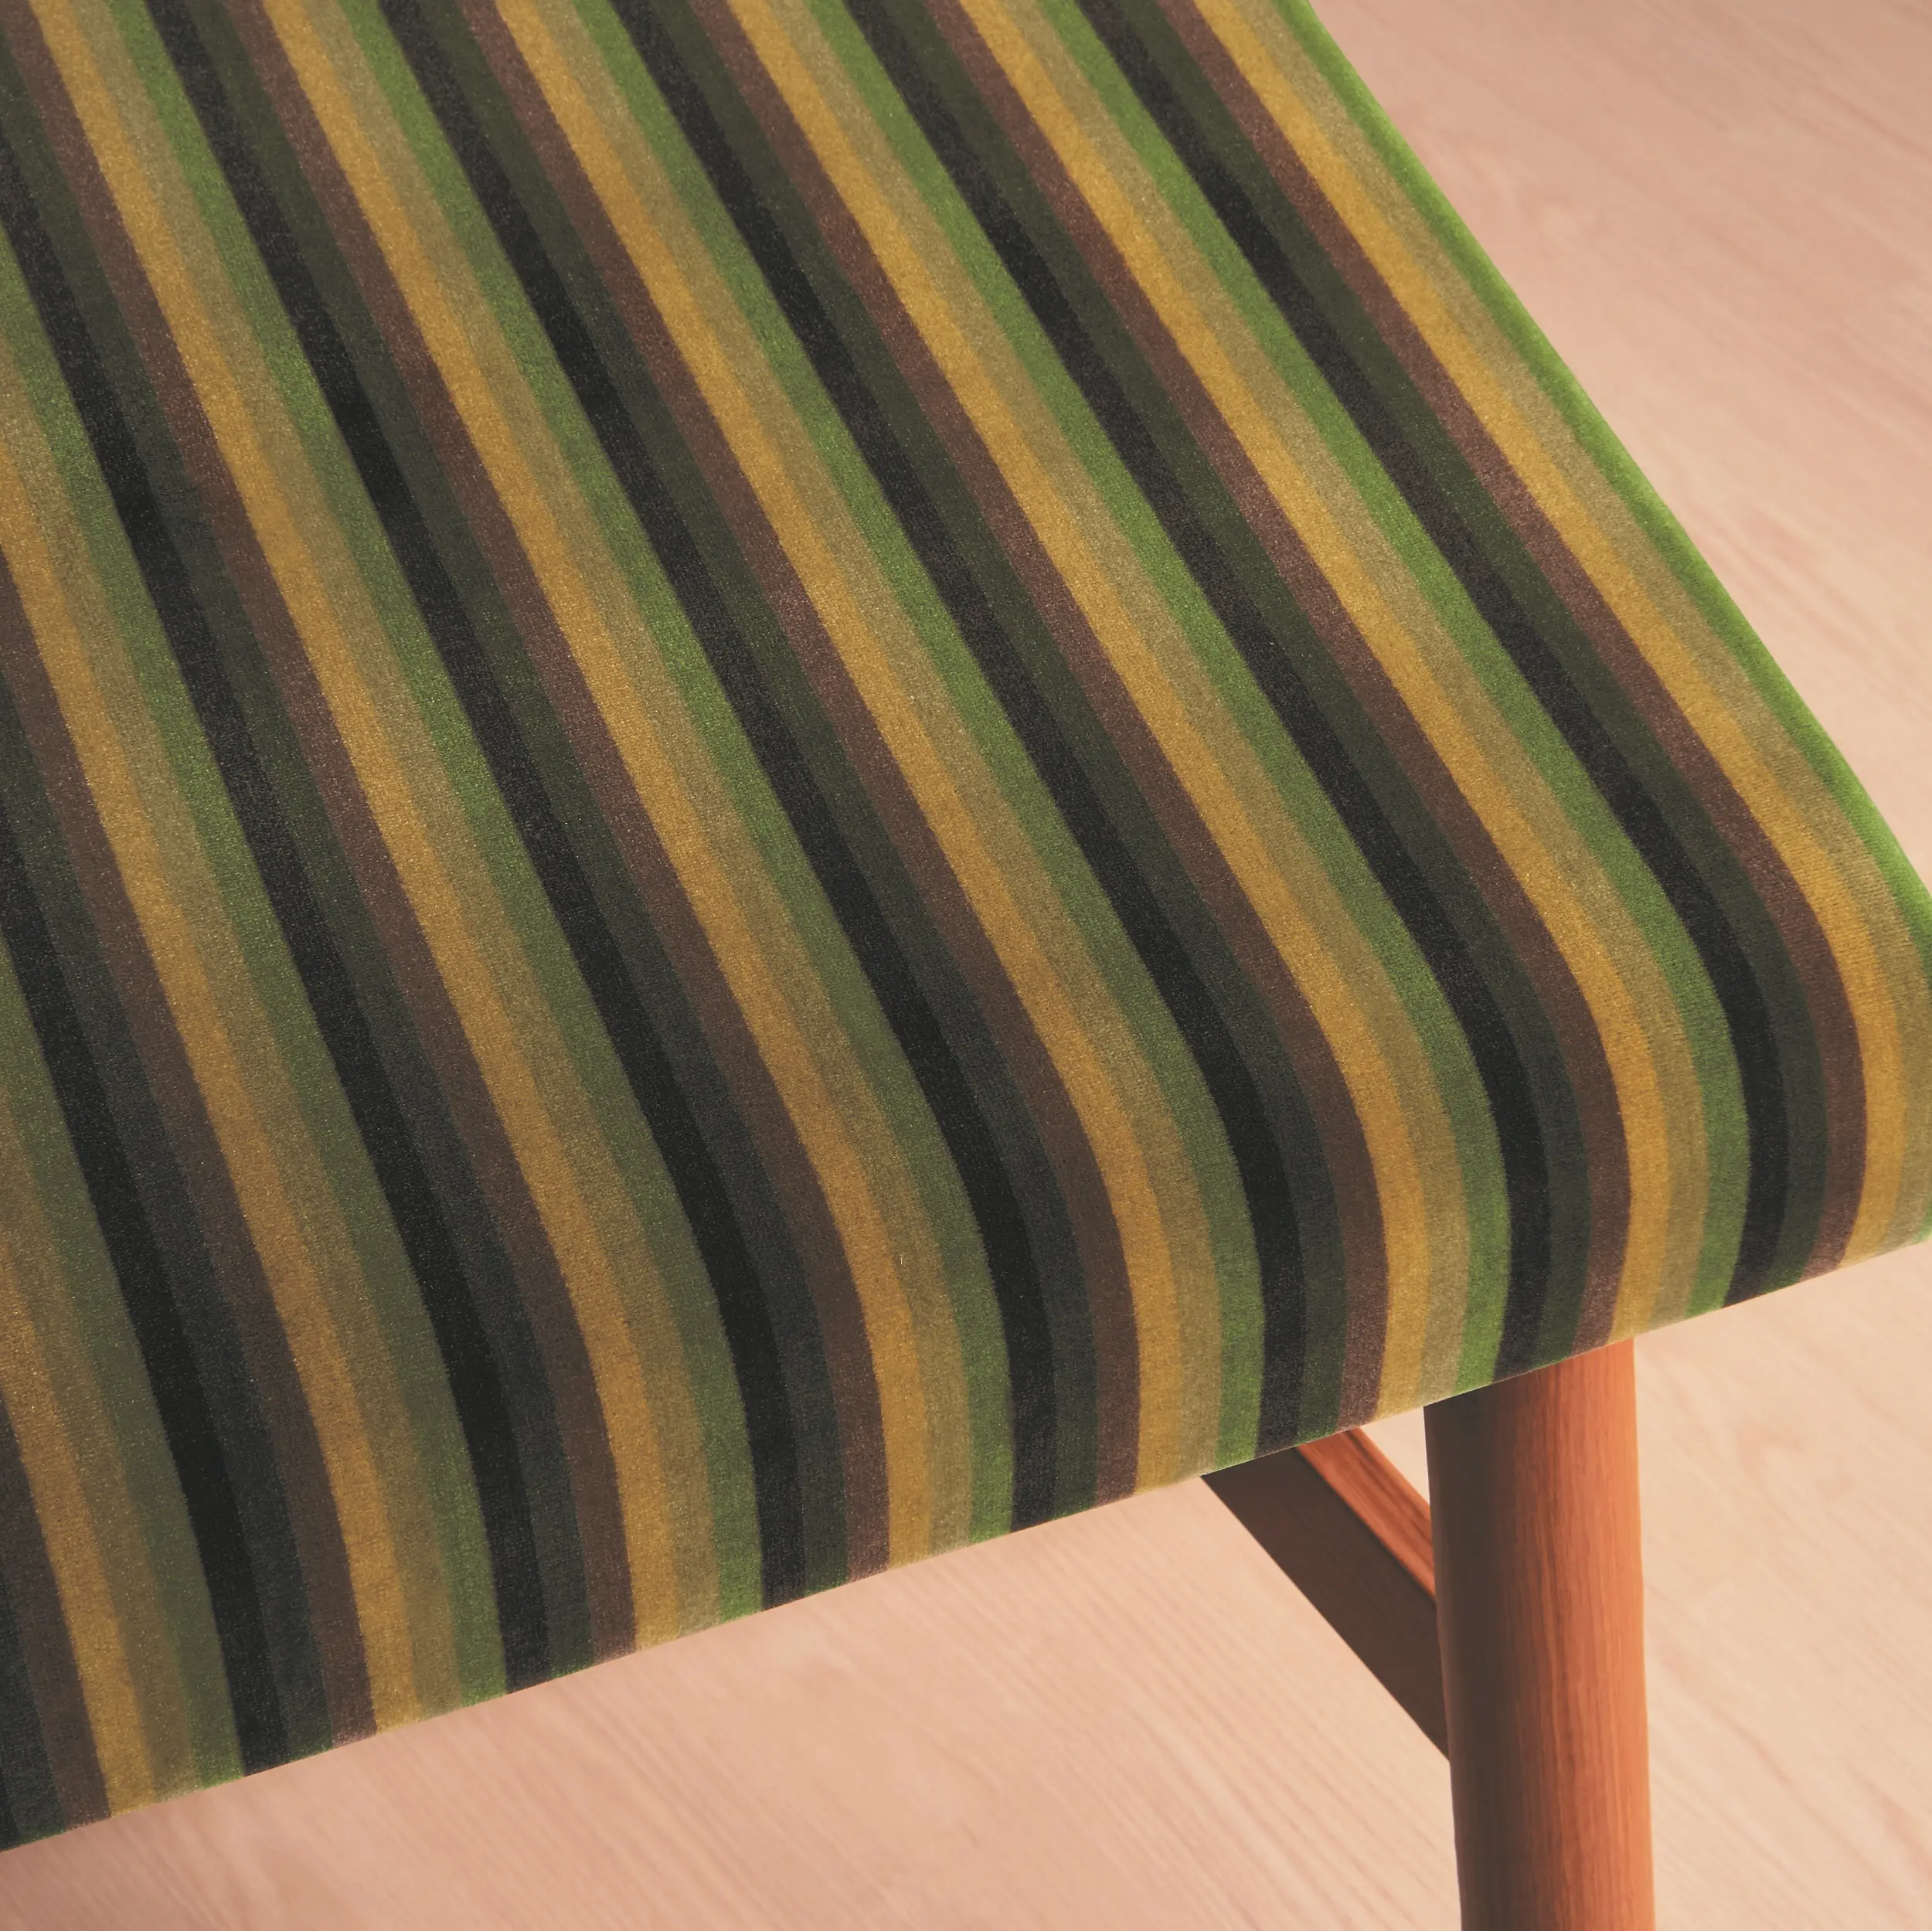 Vải sọc moquette giản dị và hoài cổ. Nó là một loại vải bọc ghế rất dễ thương được sản xuất bởi Nhật Bản.